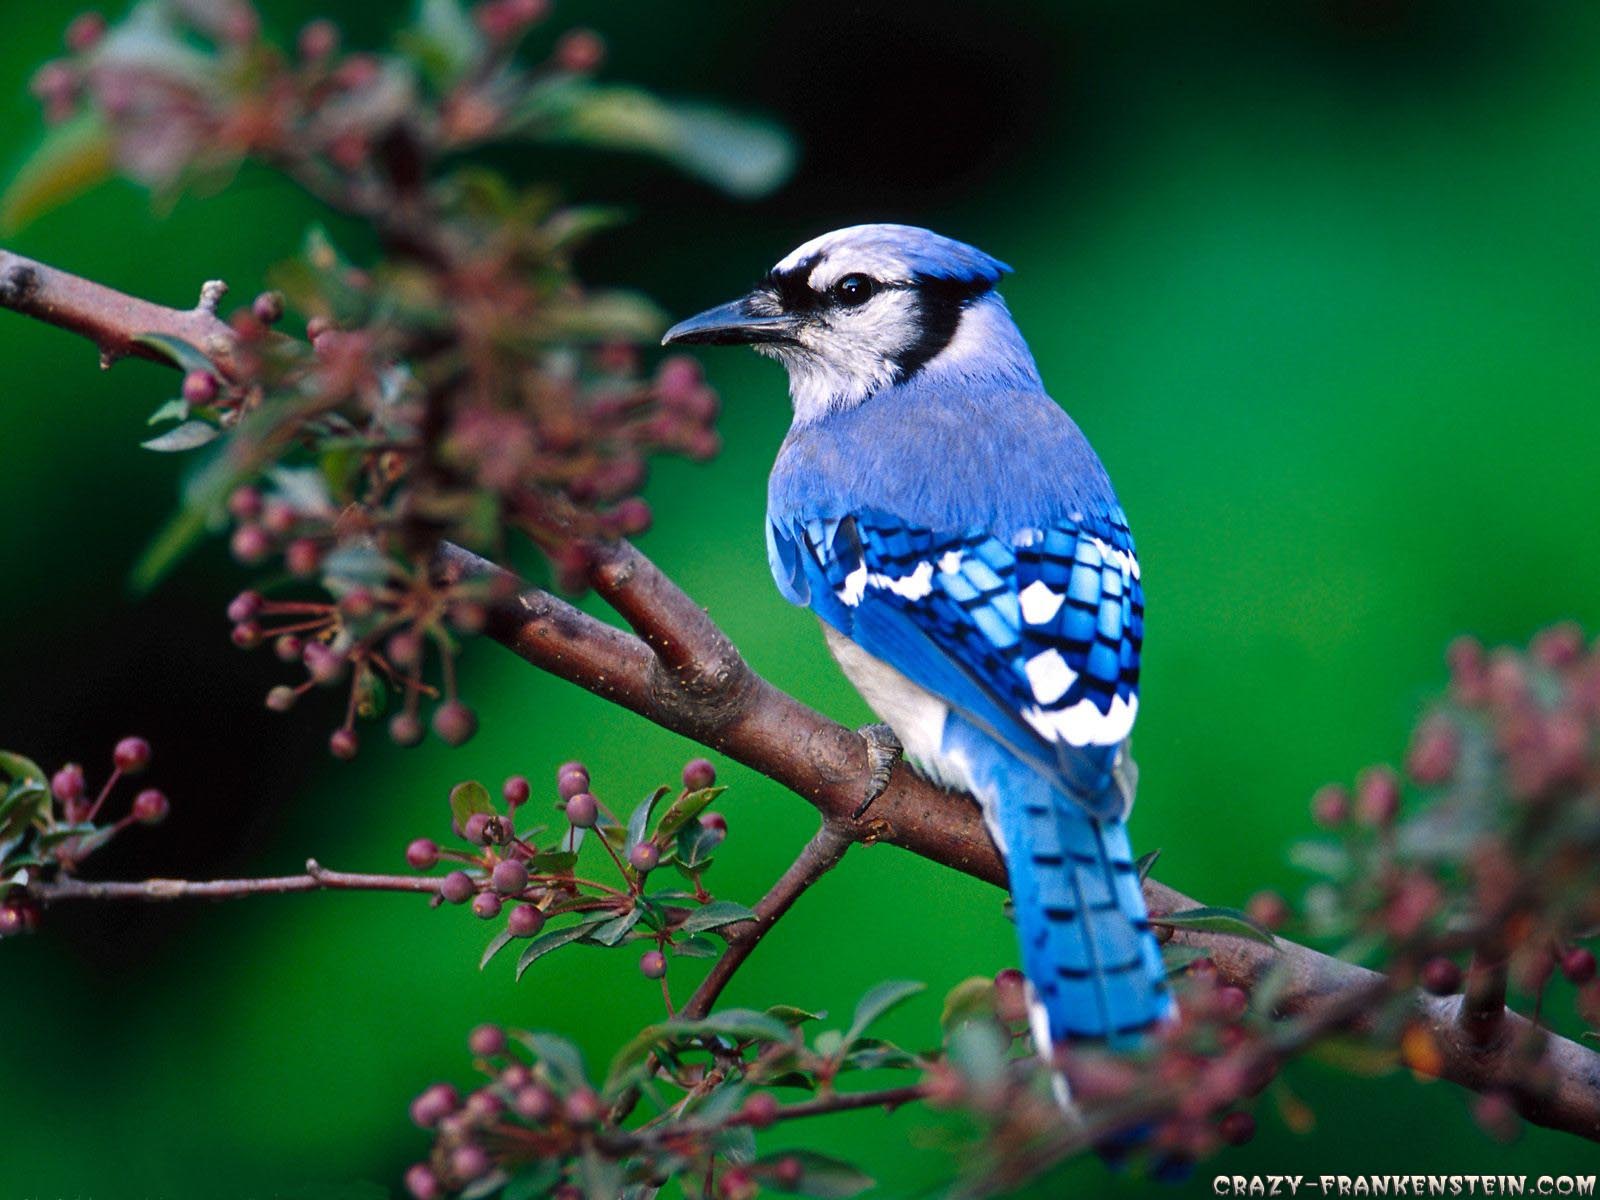 https://blogger.googleusercontent.com/img/b/R29vZ2xl/AVvXsEiR6efWmBoG6viSkPIUZzksaWMsy0dQsGH0yEzX0jQS4fLZrqLnkgrymIhJUGmQPF97mTtx0WHXPs8dNkTIINttd0Y4lcij31J36a5NqJOtD2PCi8thwyy-IKVkrYiqhs3gmaIYTScJaHa9/s1600/beautiful-blue-bird-wallpaper-1600x1200.jpg